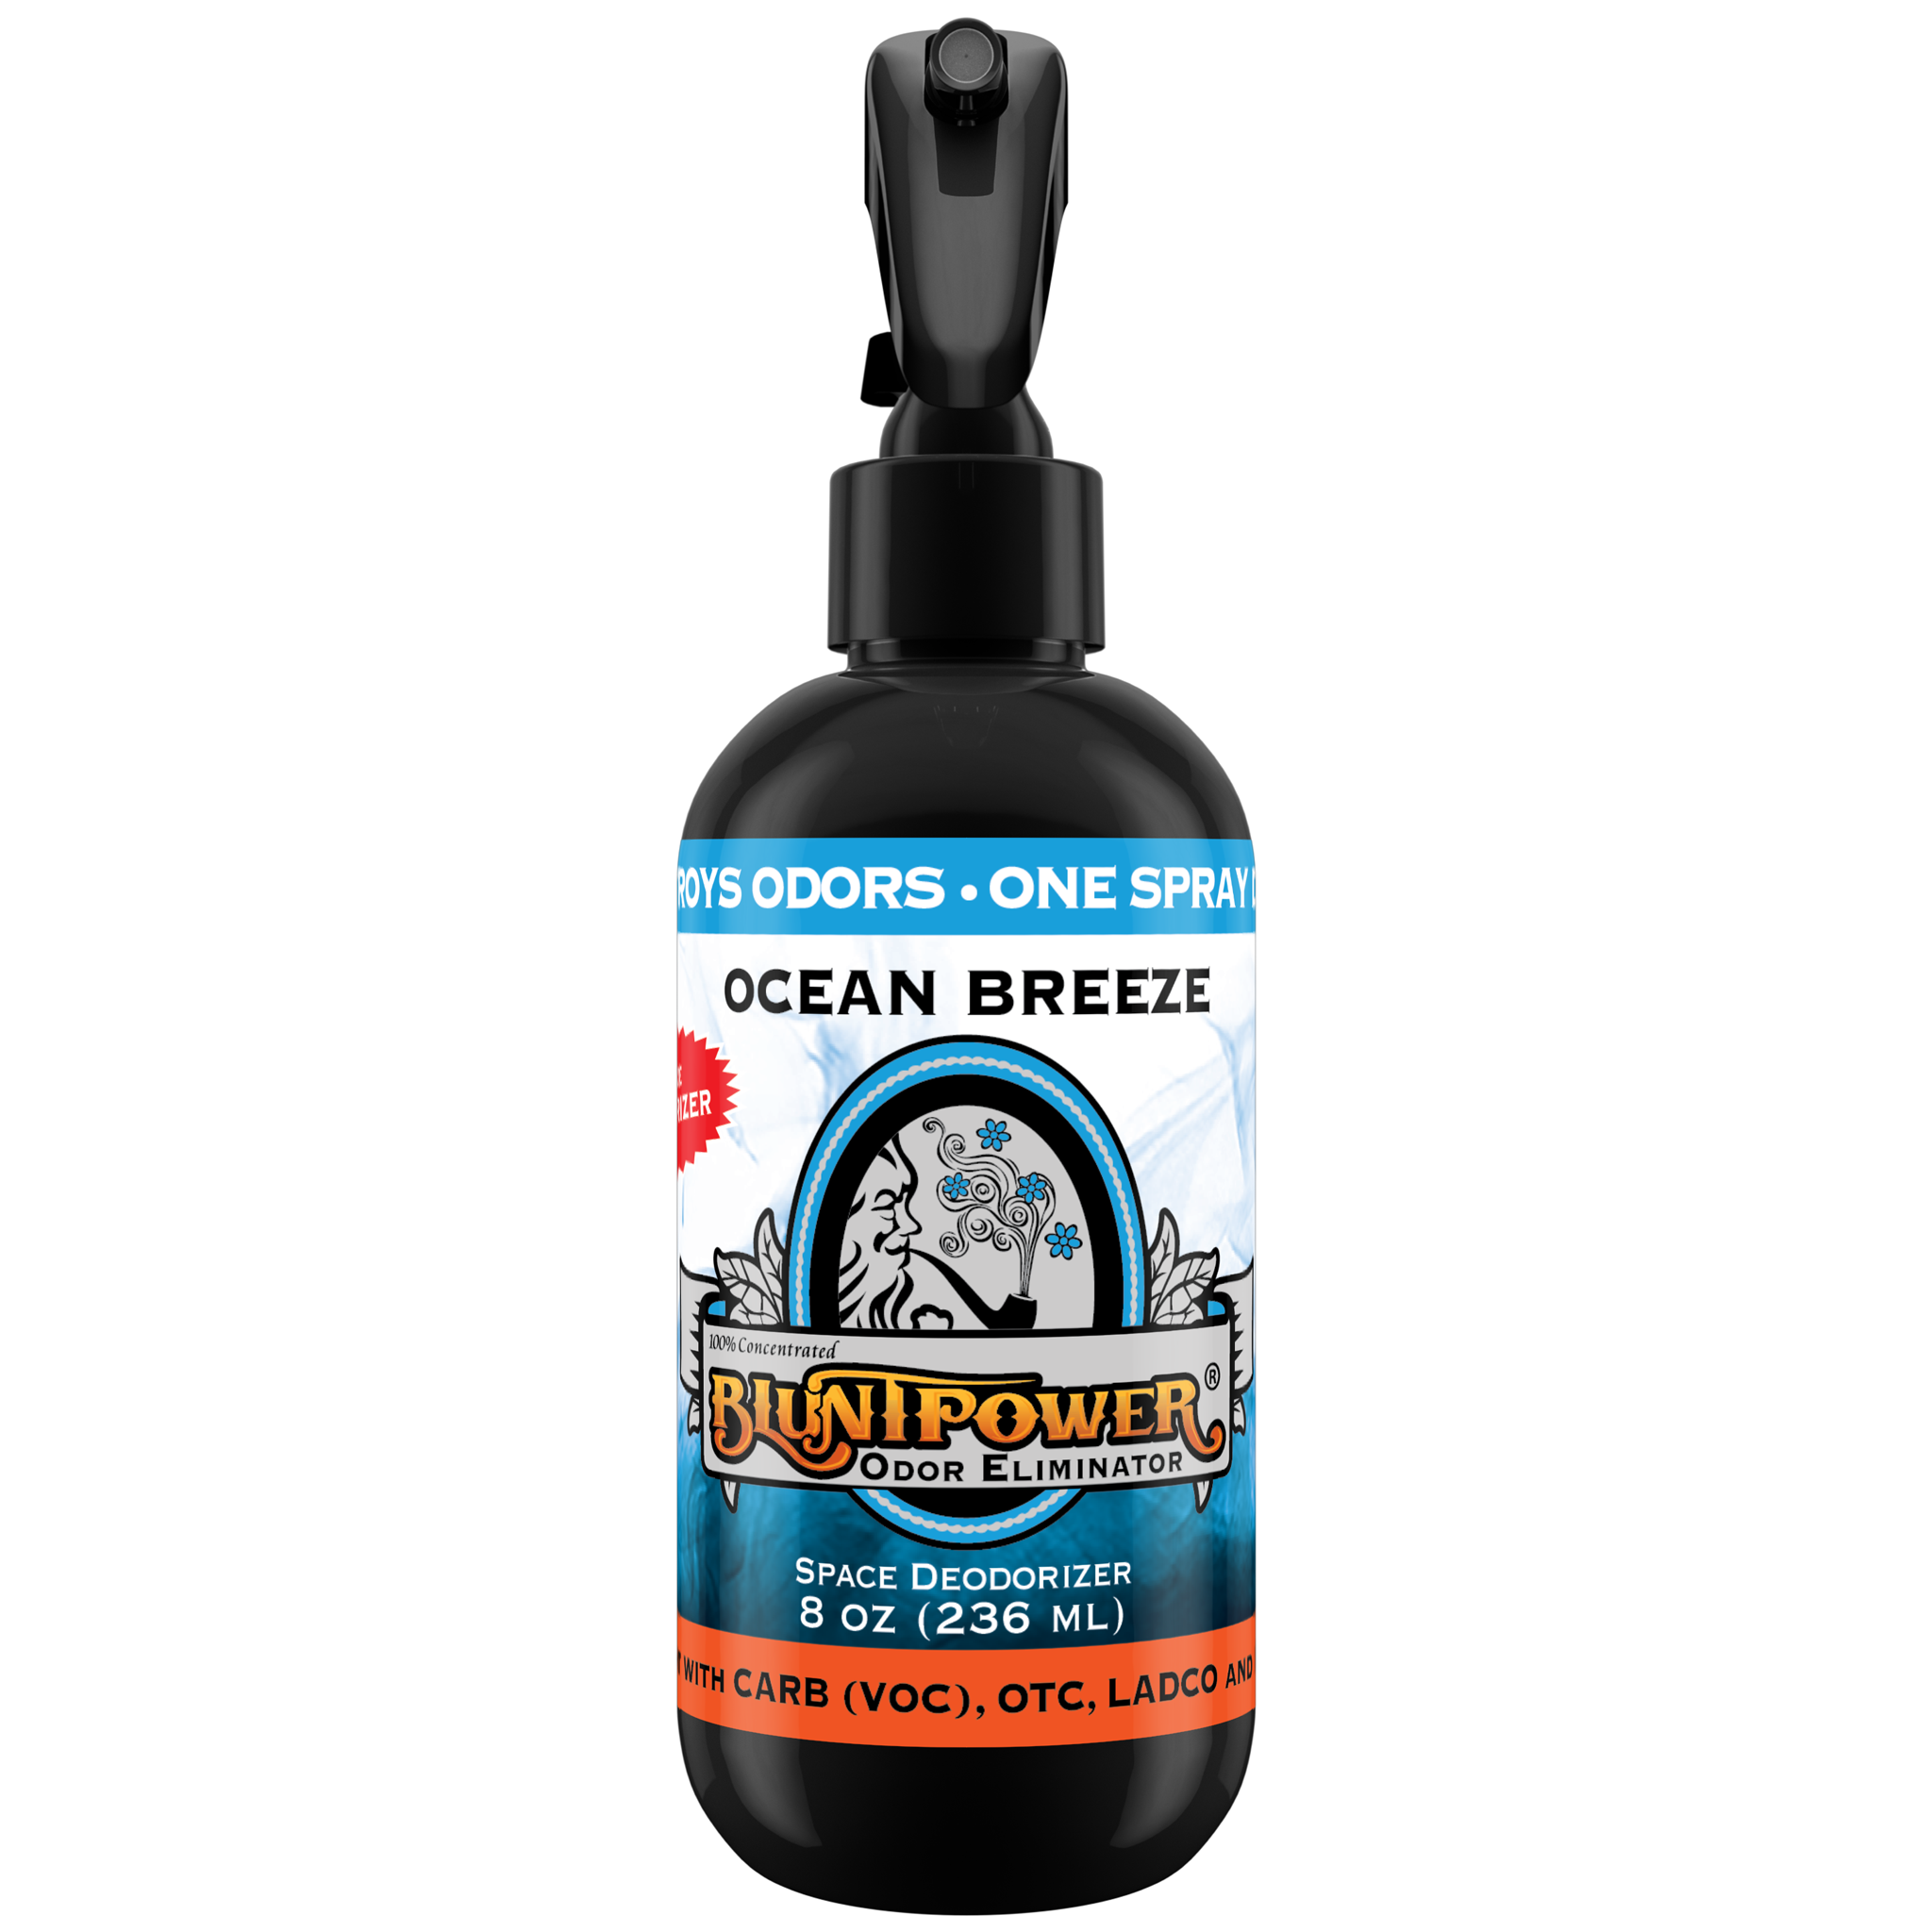 BluntPower Odor Eliminator - Ocean Breeze Scent